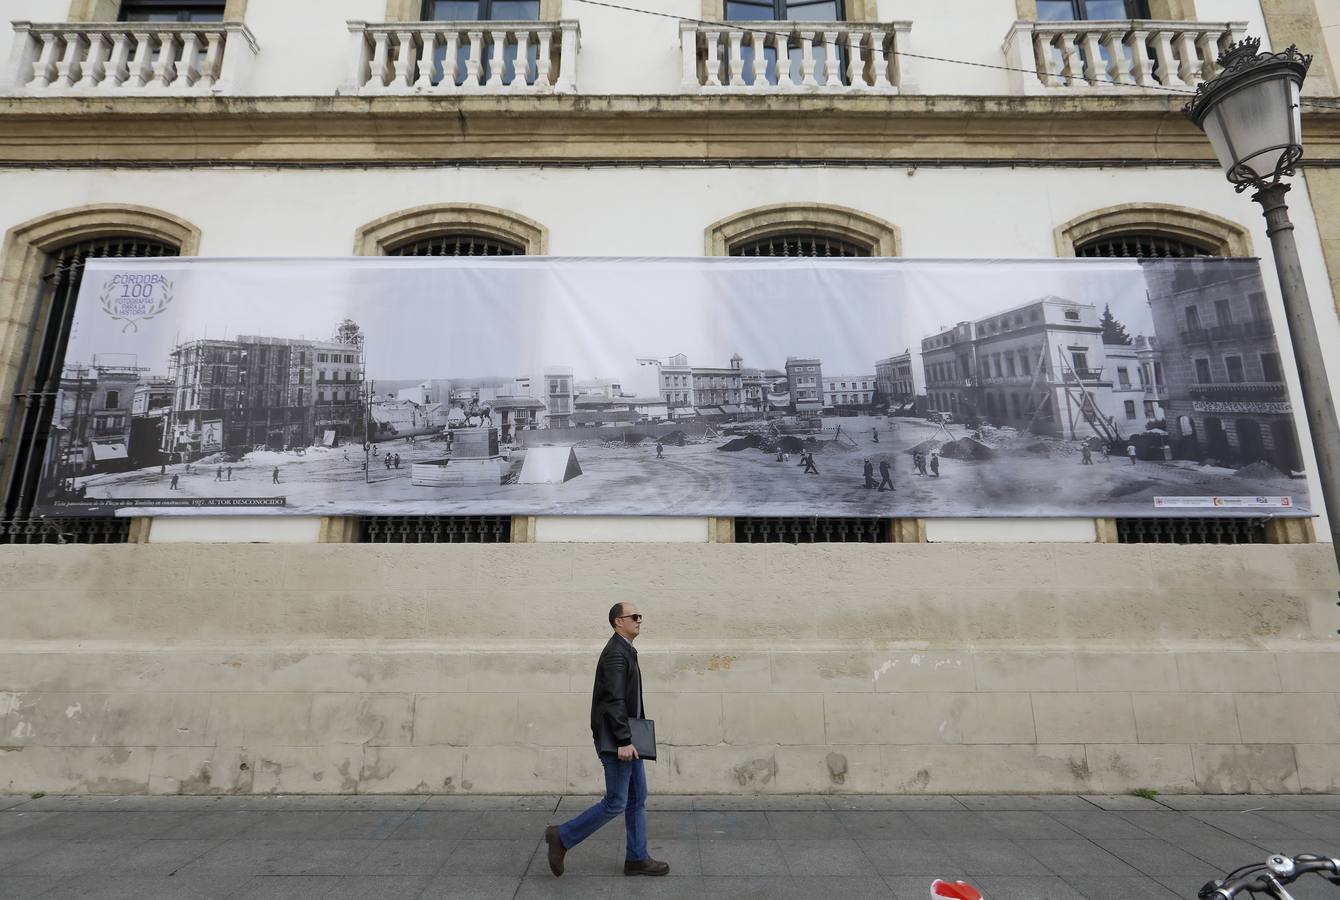 La exposición fotográfica del Archivo Municipal de Córdoba, en imágenes